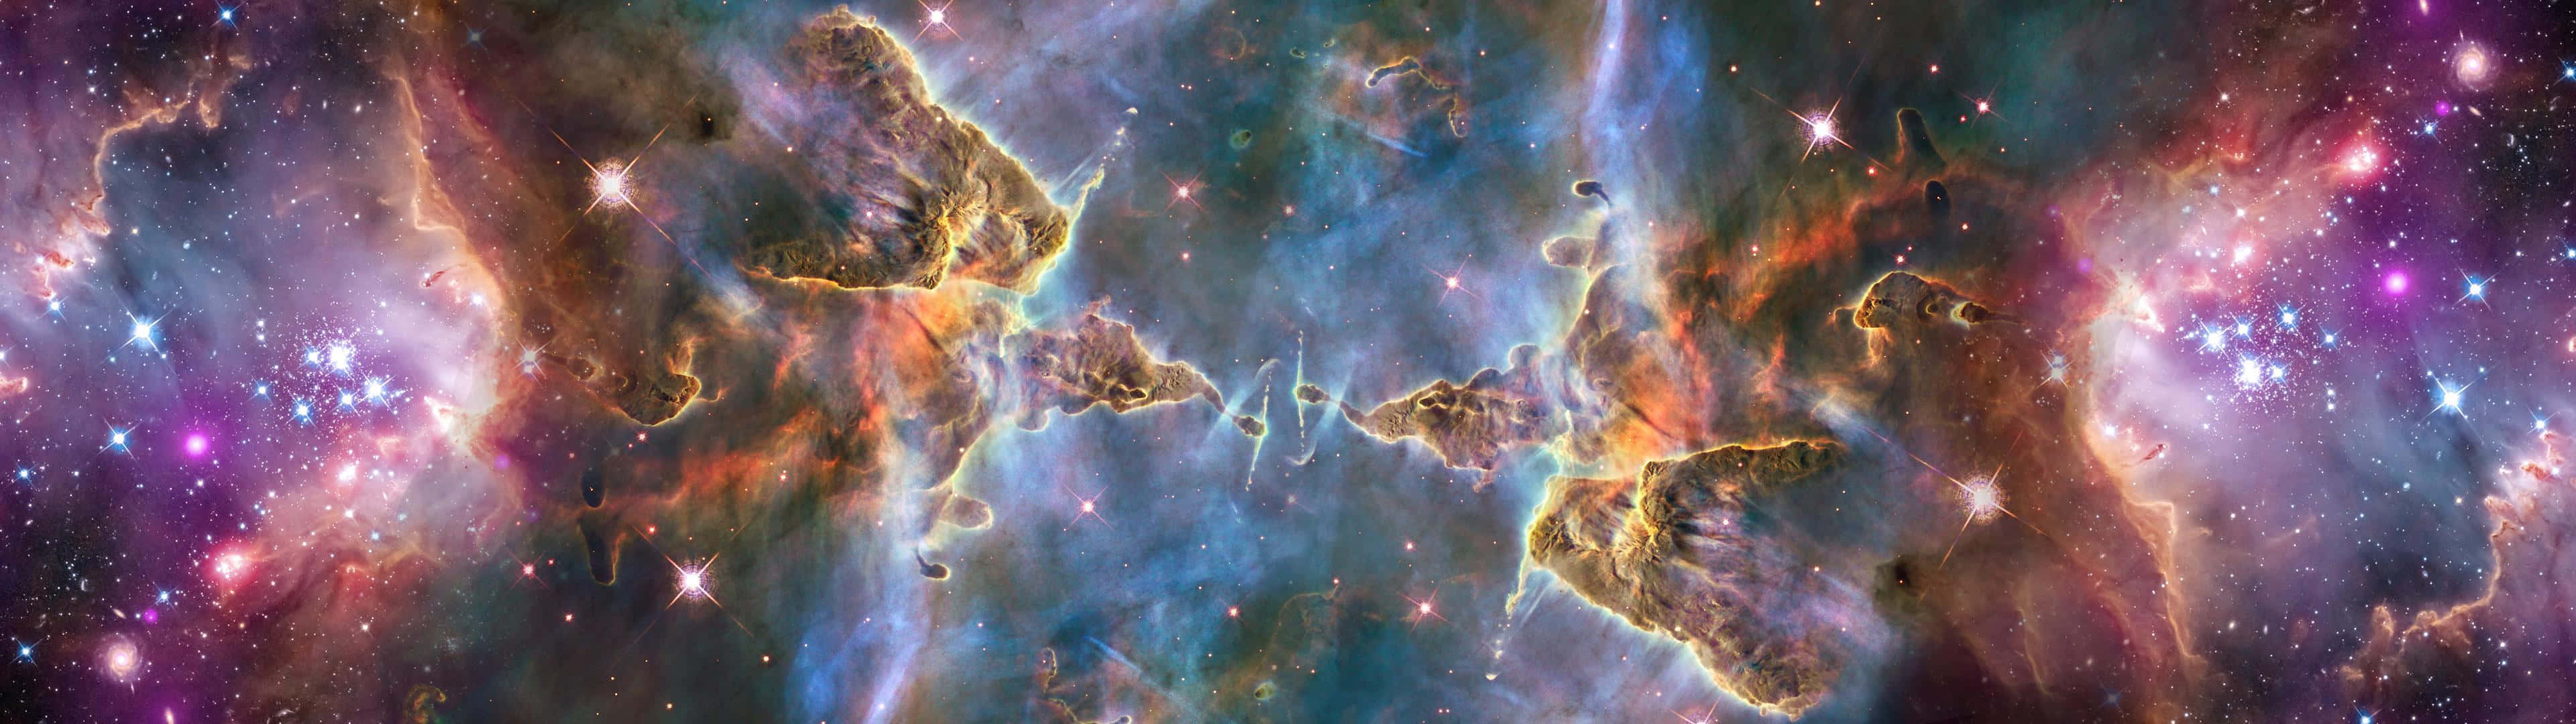 Umacena Espacial Com Estrelas E Nebulosas. Papel de Parede